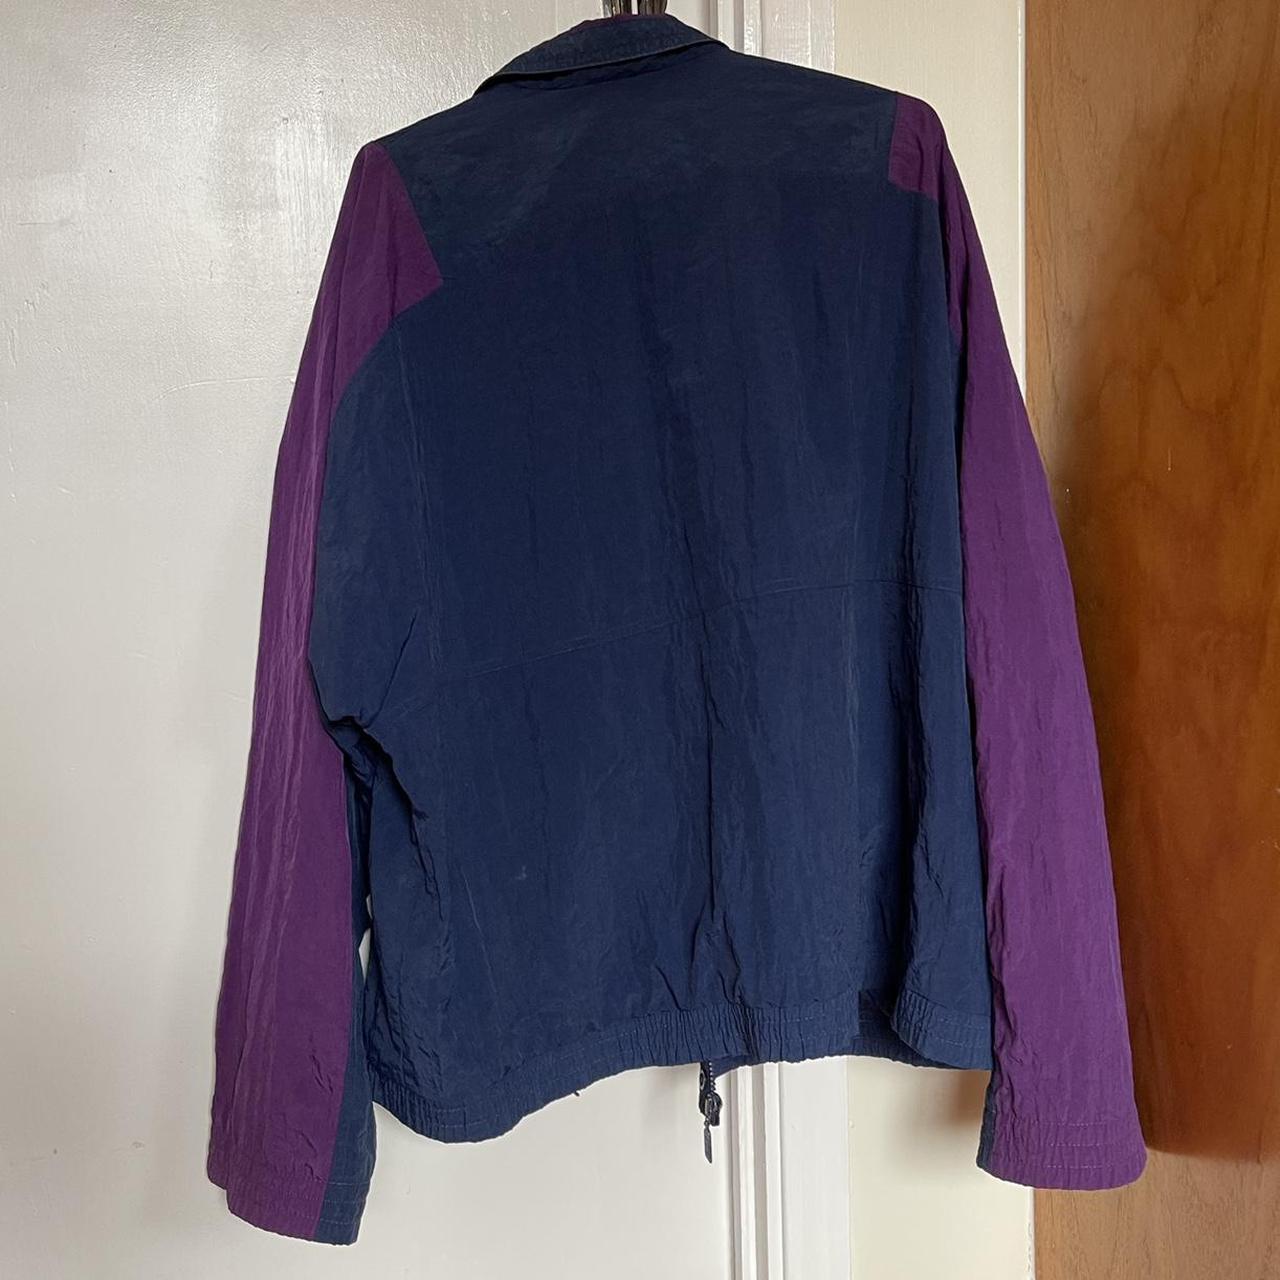 Vintage NIKE navy and purple sport jacket, water... - Depop